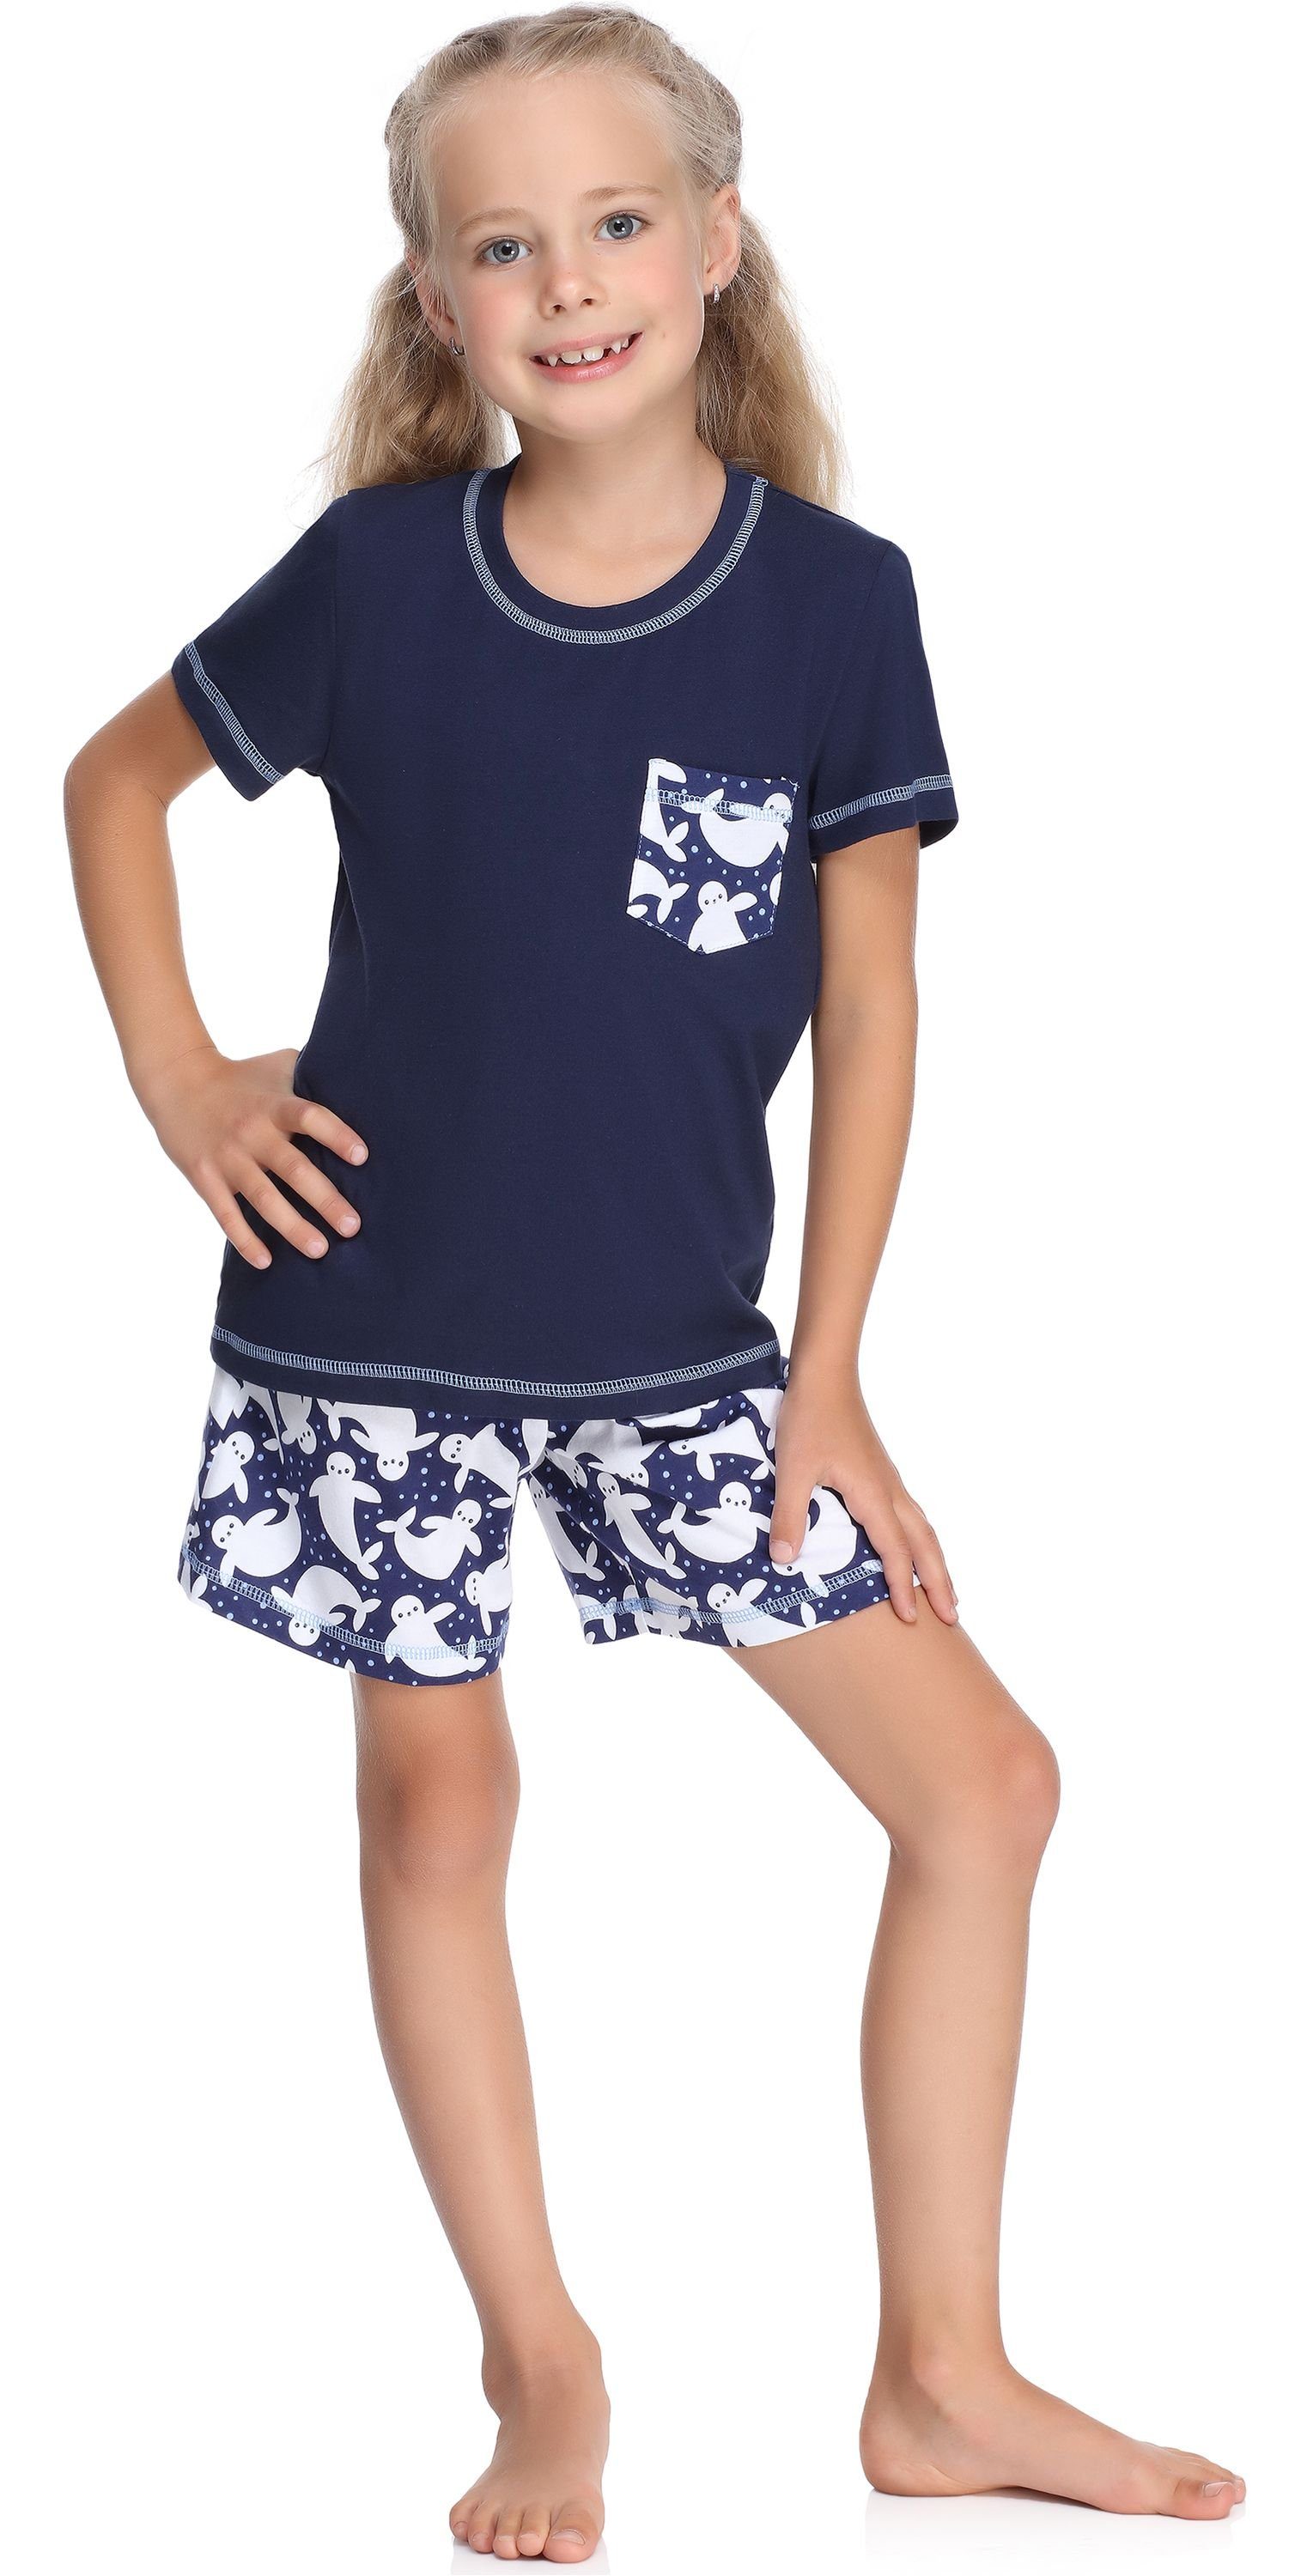 MS10-292 Baumwolle Kurz Mädchen Merry Style Schlafanzug Marine/Punkte Schlafanzüge Set Pyjama aus